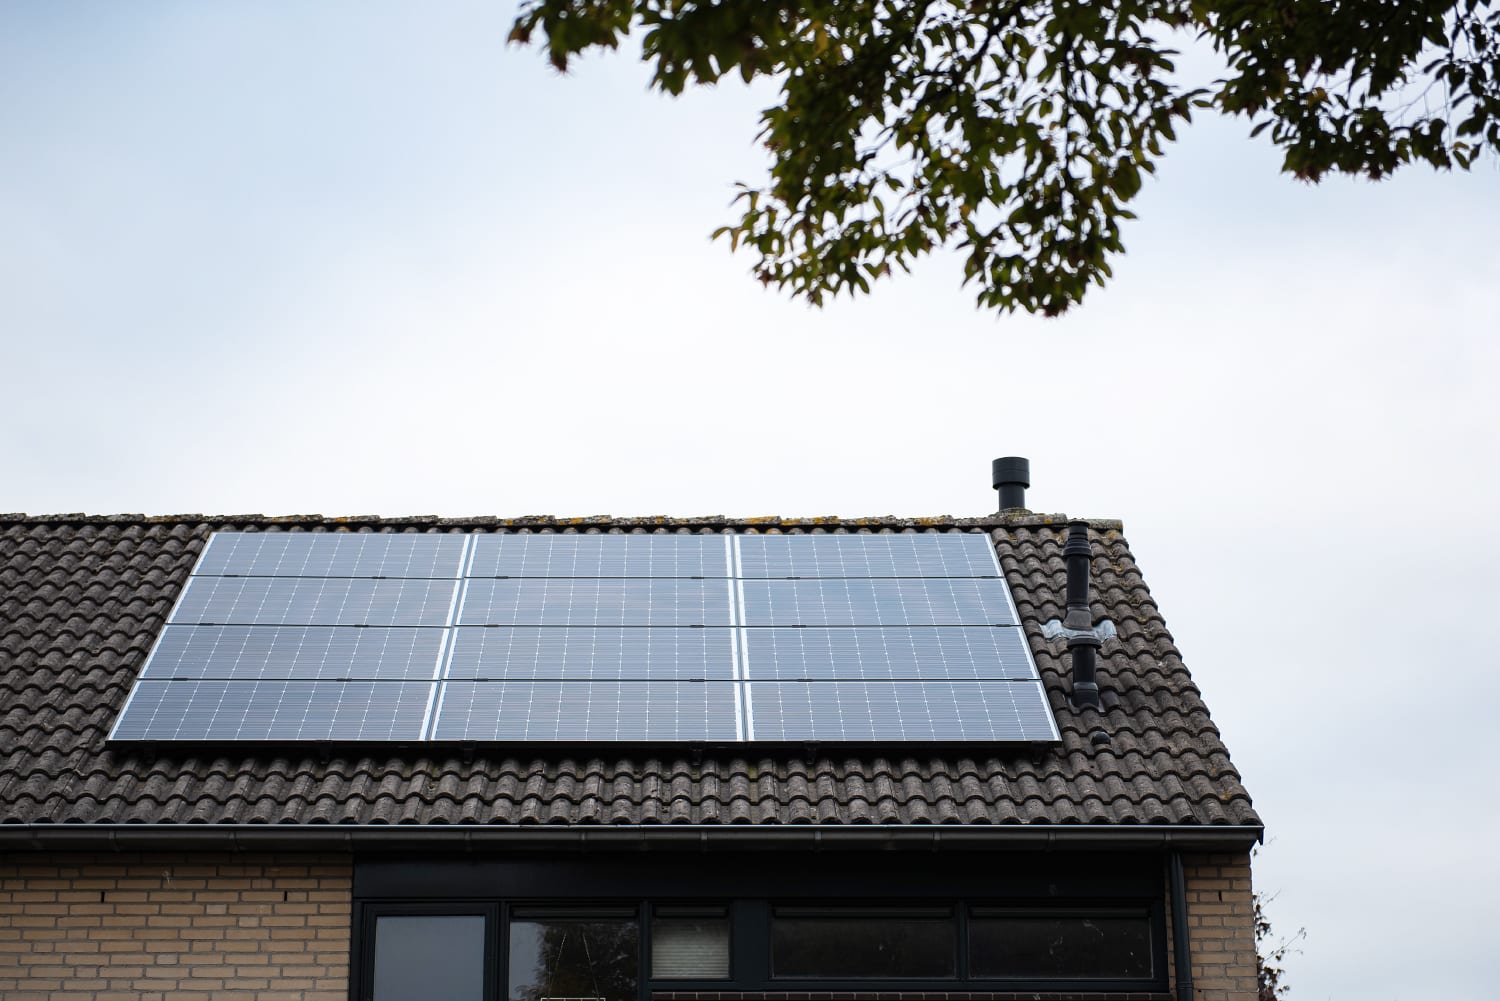 Verwarmingspaneel met fotoprint, heatstrip, bureauwarmer en zonnepanelen - Woonhuis Nijmegen